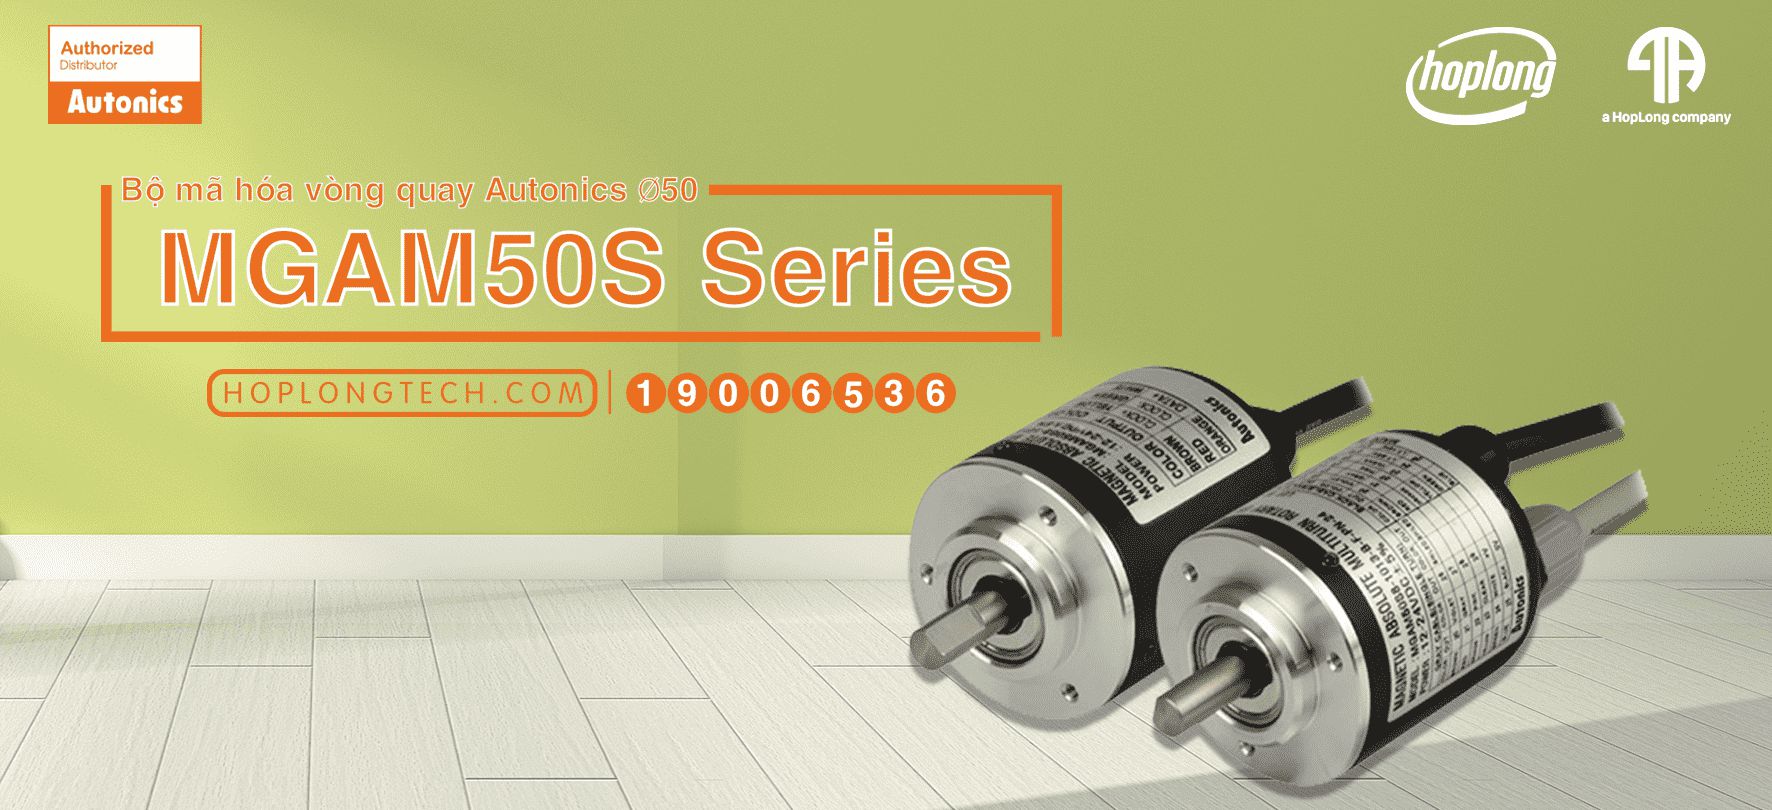 [NEW] Bộ mã hóa vòng quay Autonics Ø50 (Multi-Turn) loại tuyệt đối có từ tính - MGAM50S Series